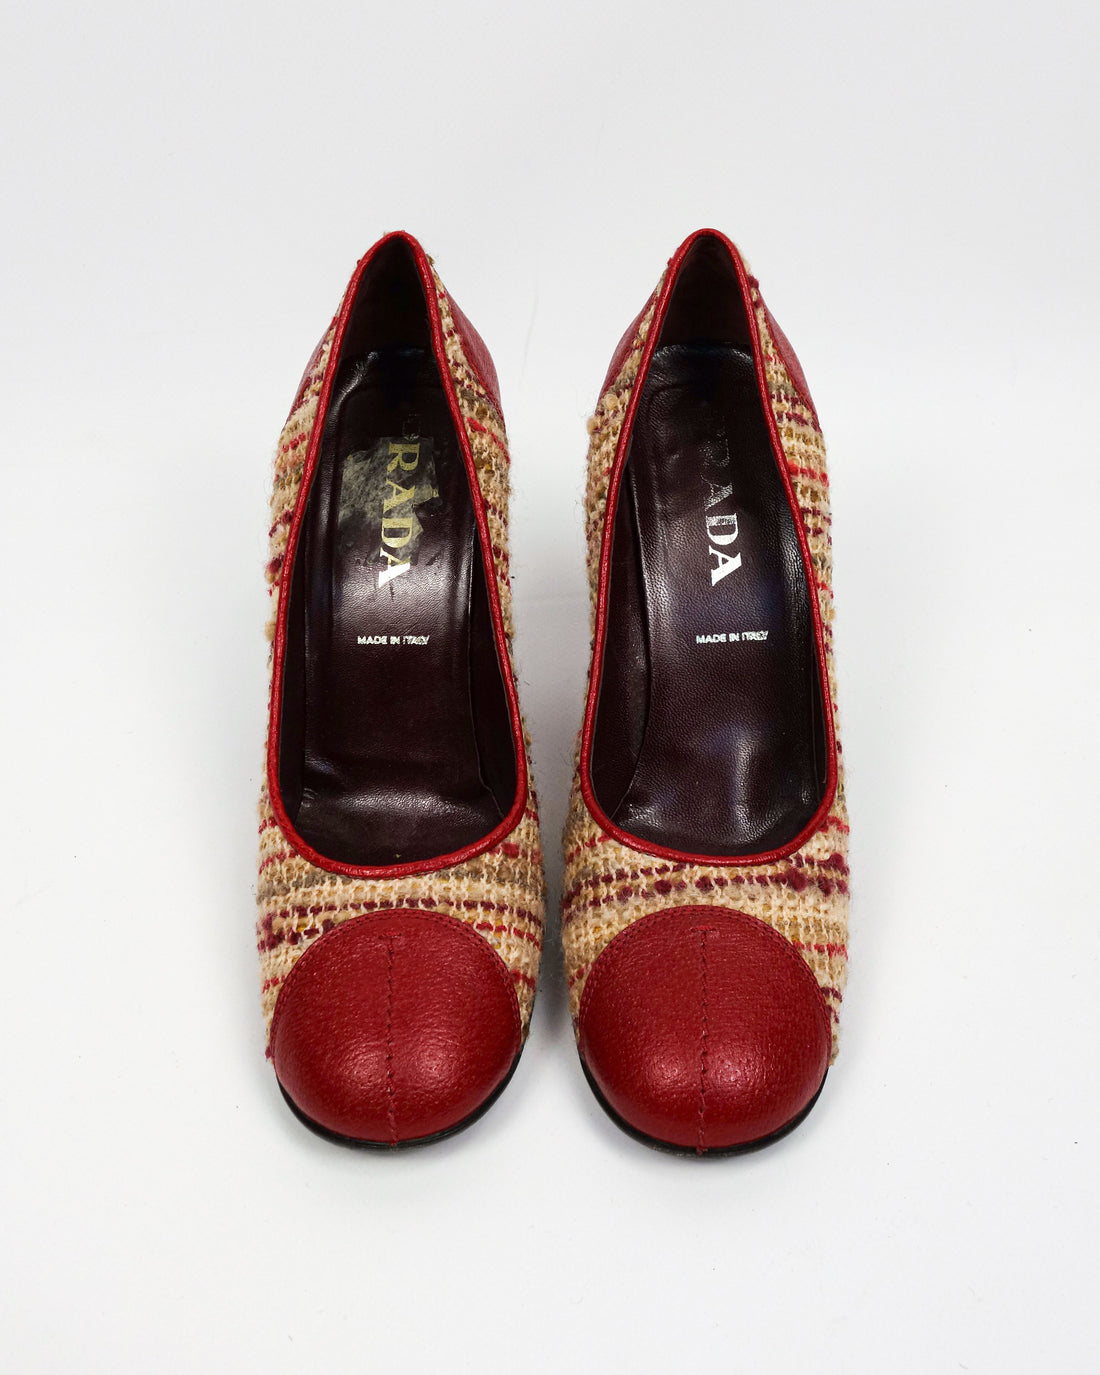 Prada Wool + Leather Red Heels 2000's